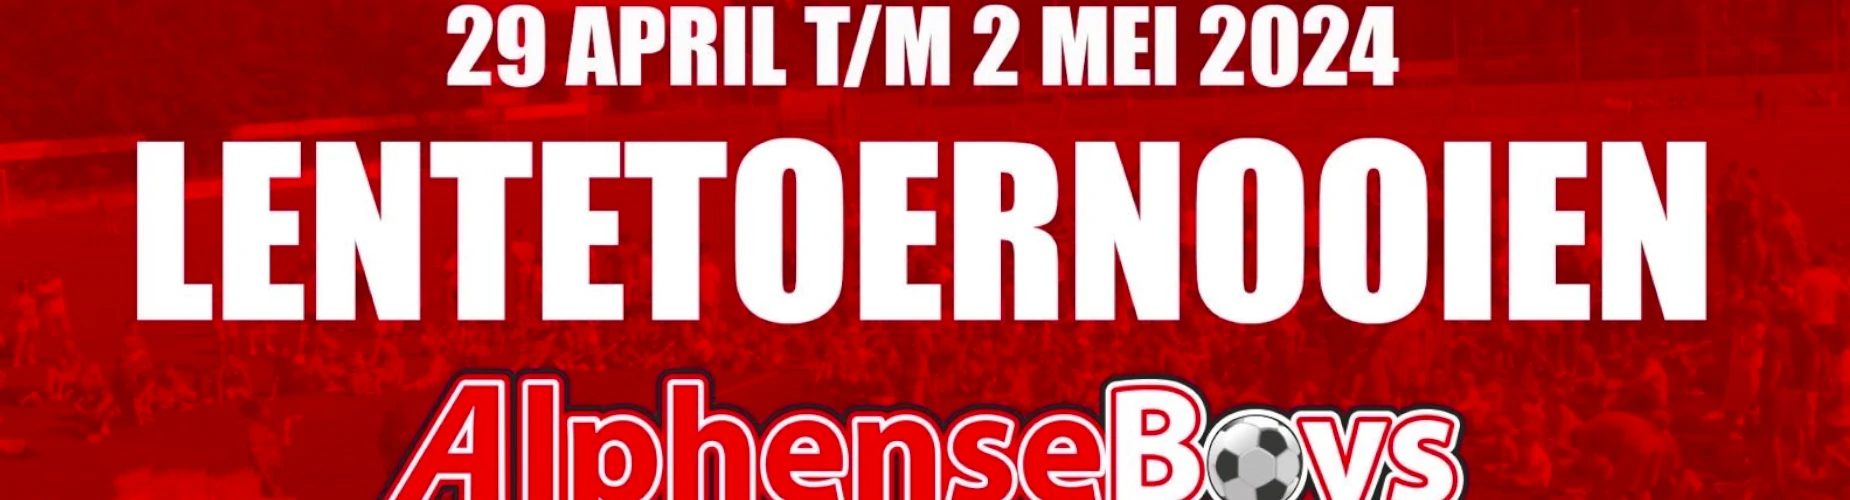 Banner - O10 - Lentetoernooi Alphense Boys - Alphense Boys - Alphen aan den Rijn